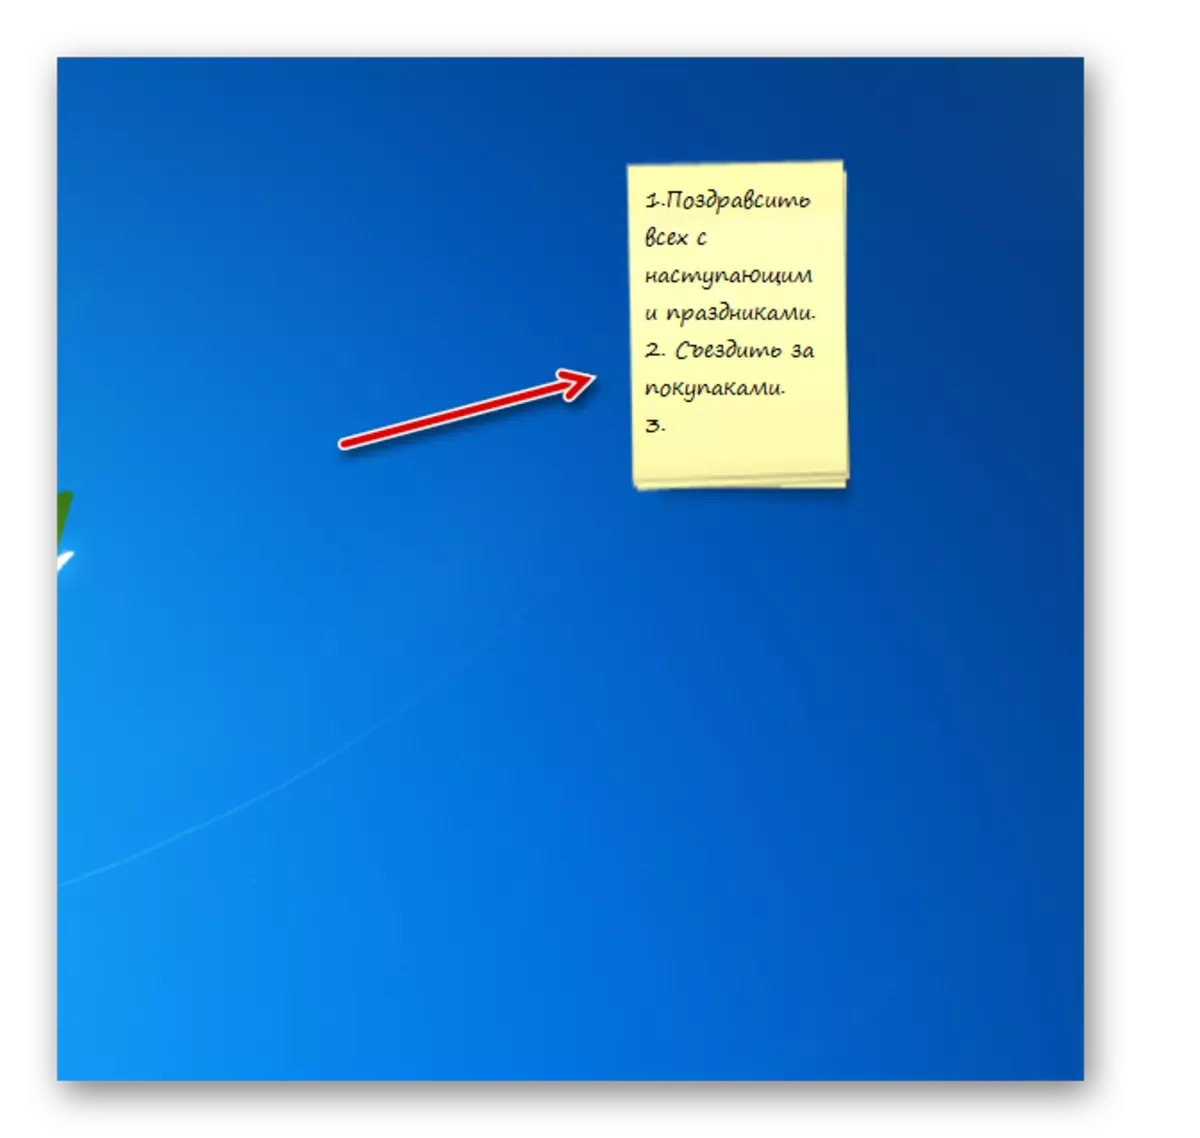 在Windows 7的桌面上的較長音符小工具接口中註意